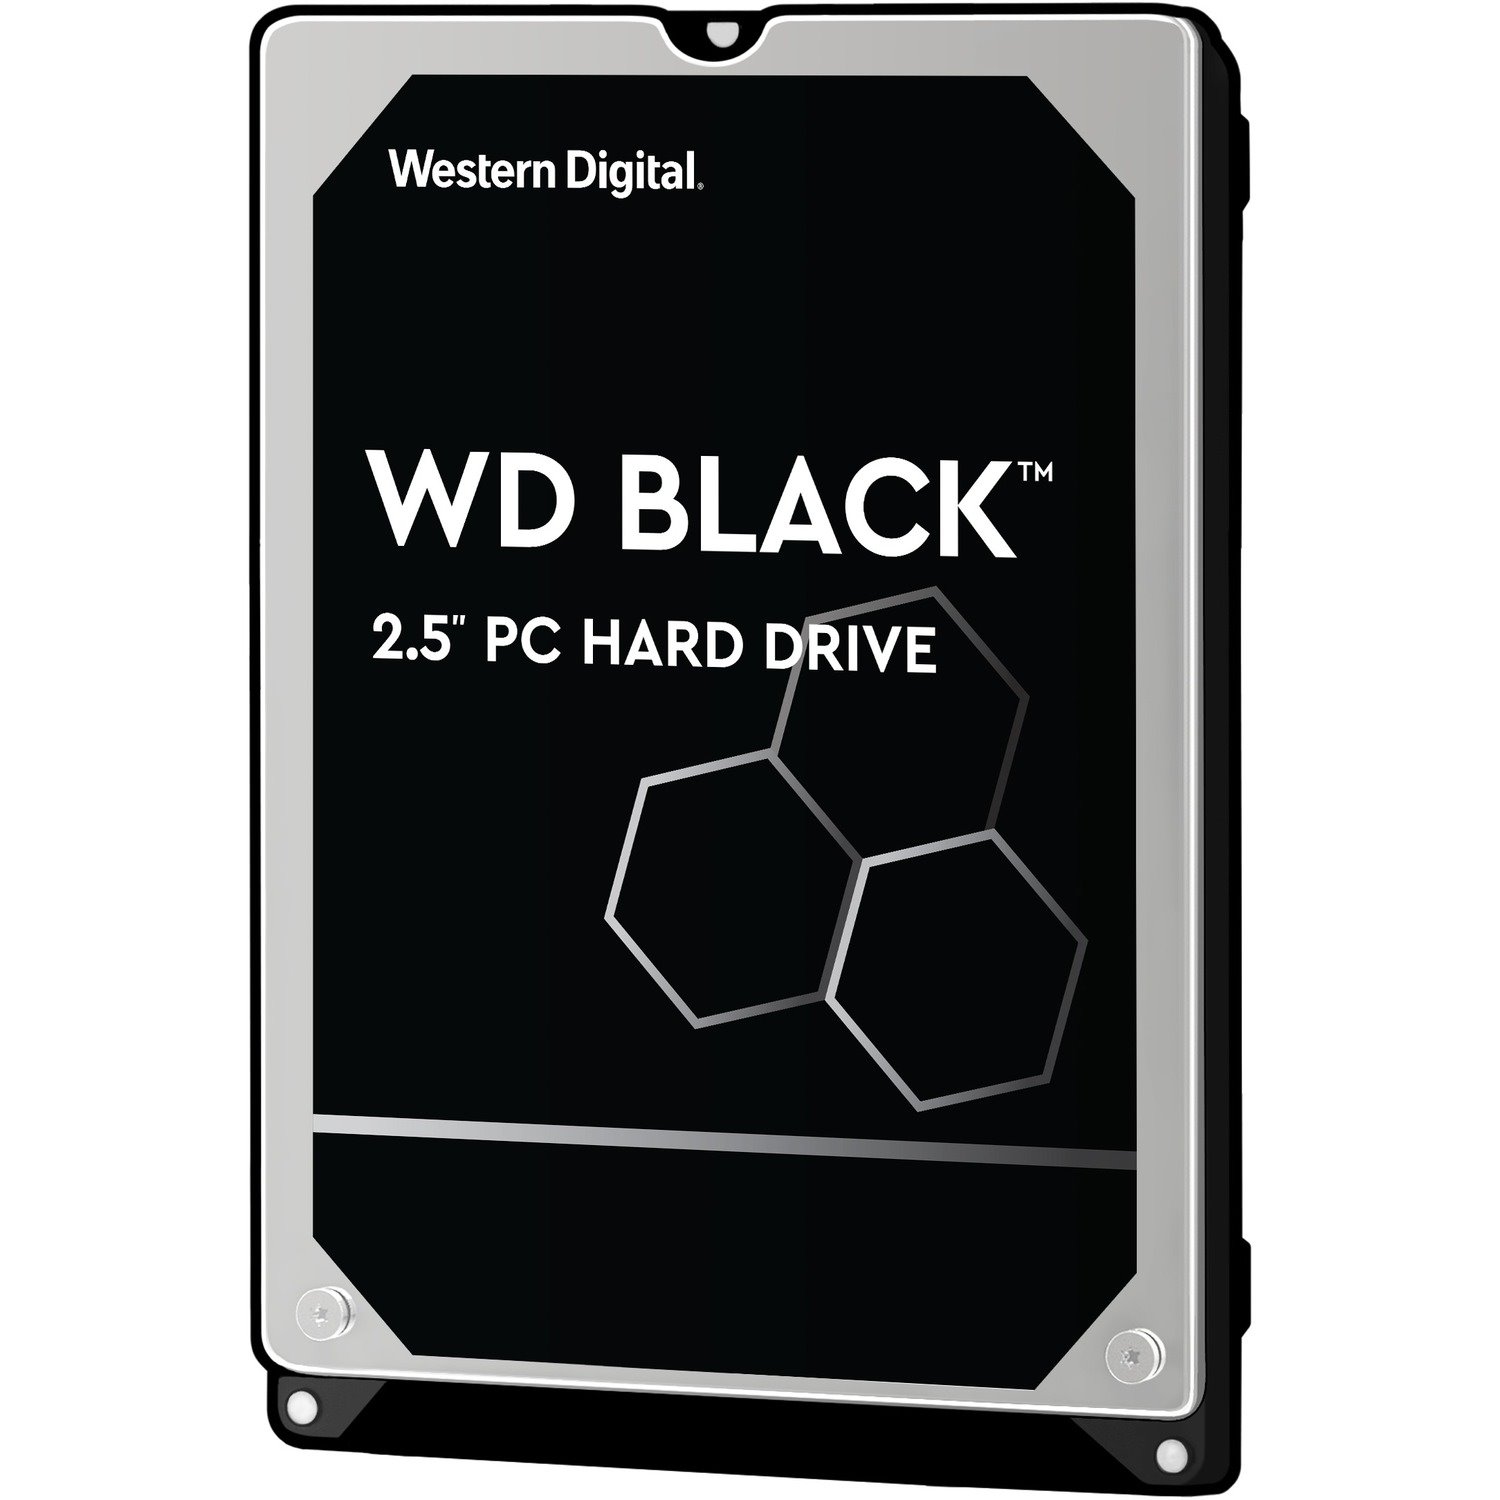 Western Digital Black WD5000LPLX 500 GB Hard Drive - 2.5" Internal - SATA (SATA/600)